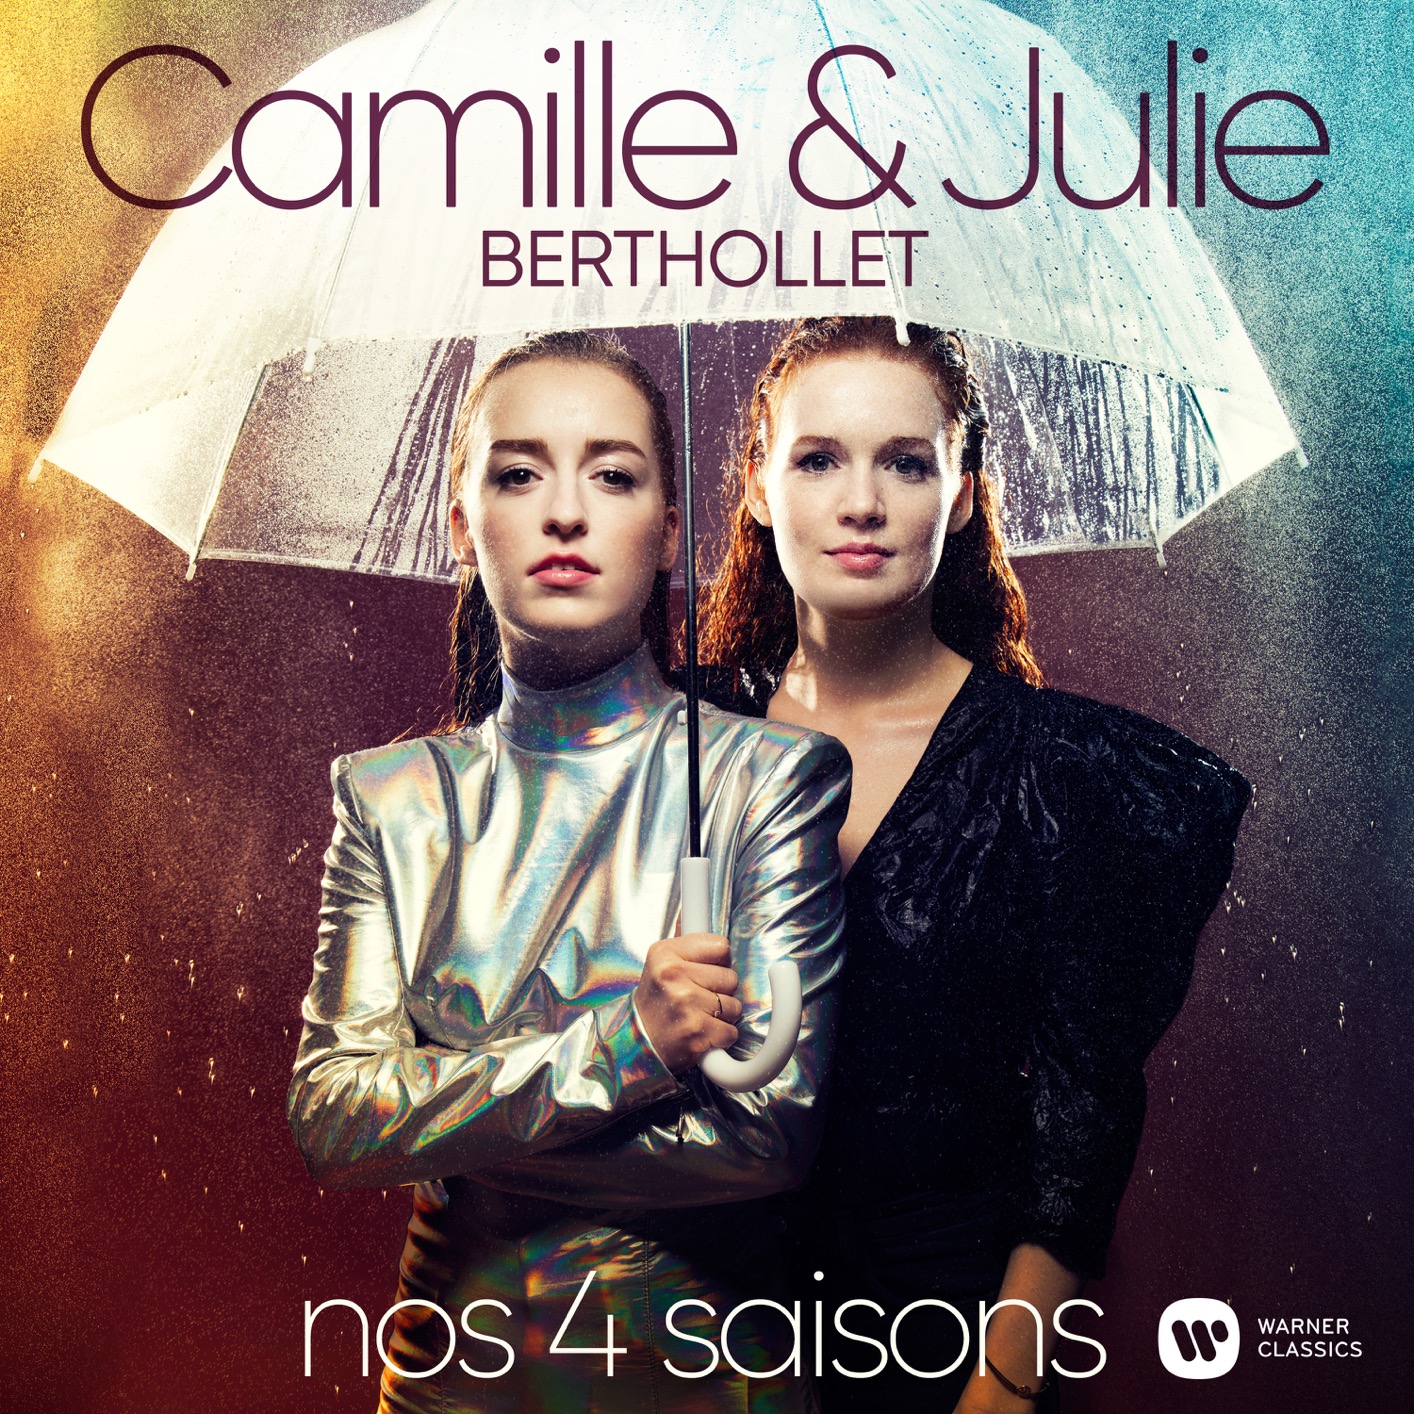 Camille & Julie Berthollet - Nos 4 Saisons (2020) [FLAC 24bit/96kHz]